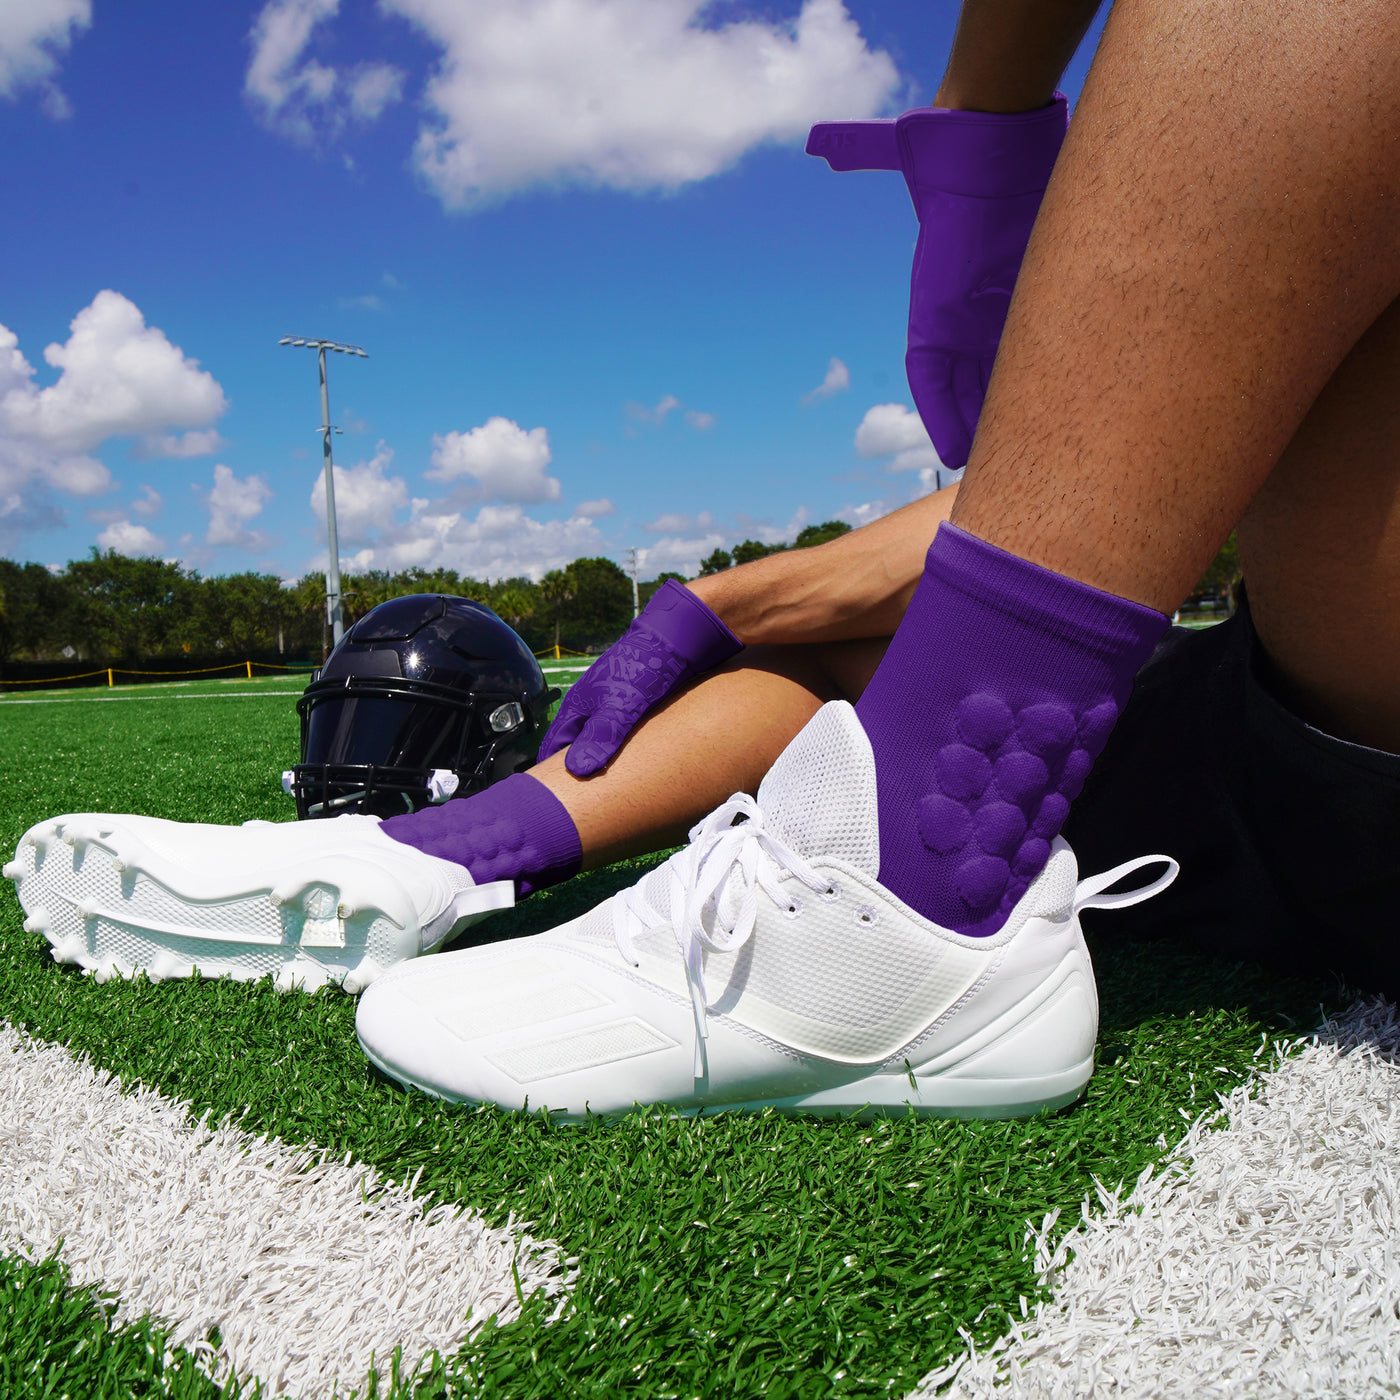 Hue Purple Football Padded Short Socks